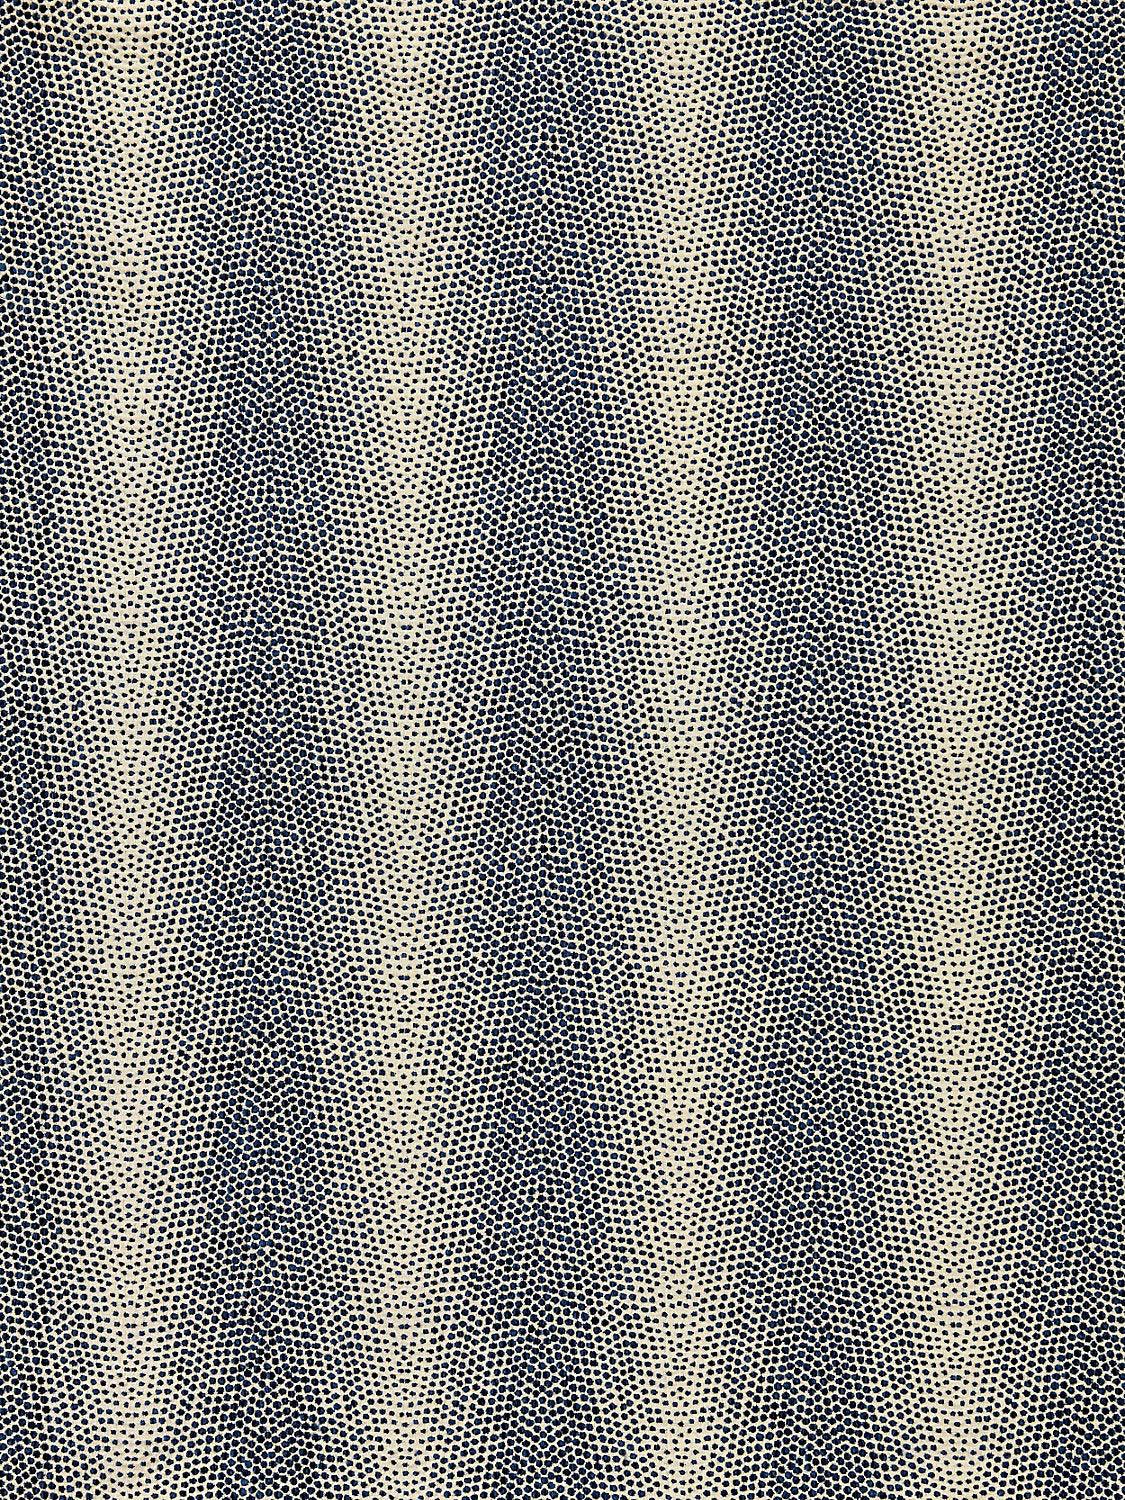 DESPRES WEAVE INDIGO - Atlanta Fabrics